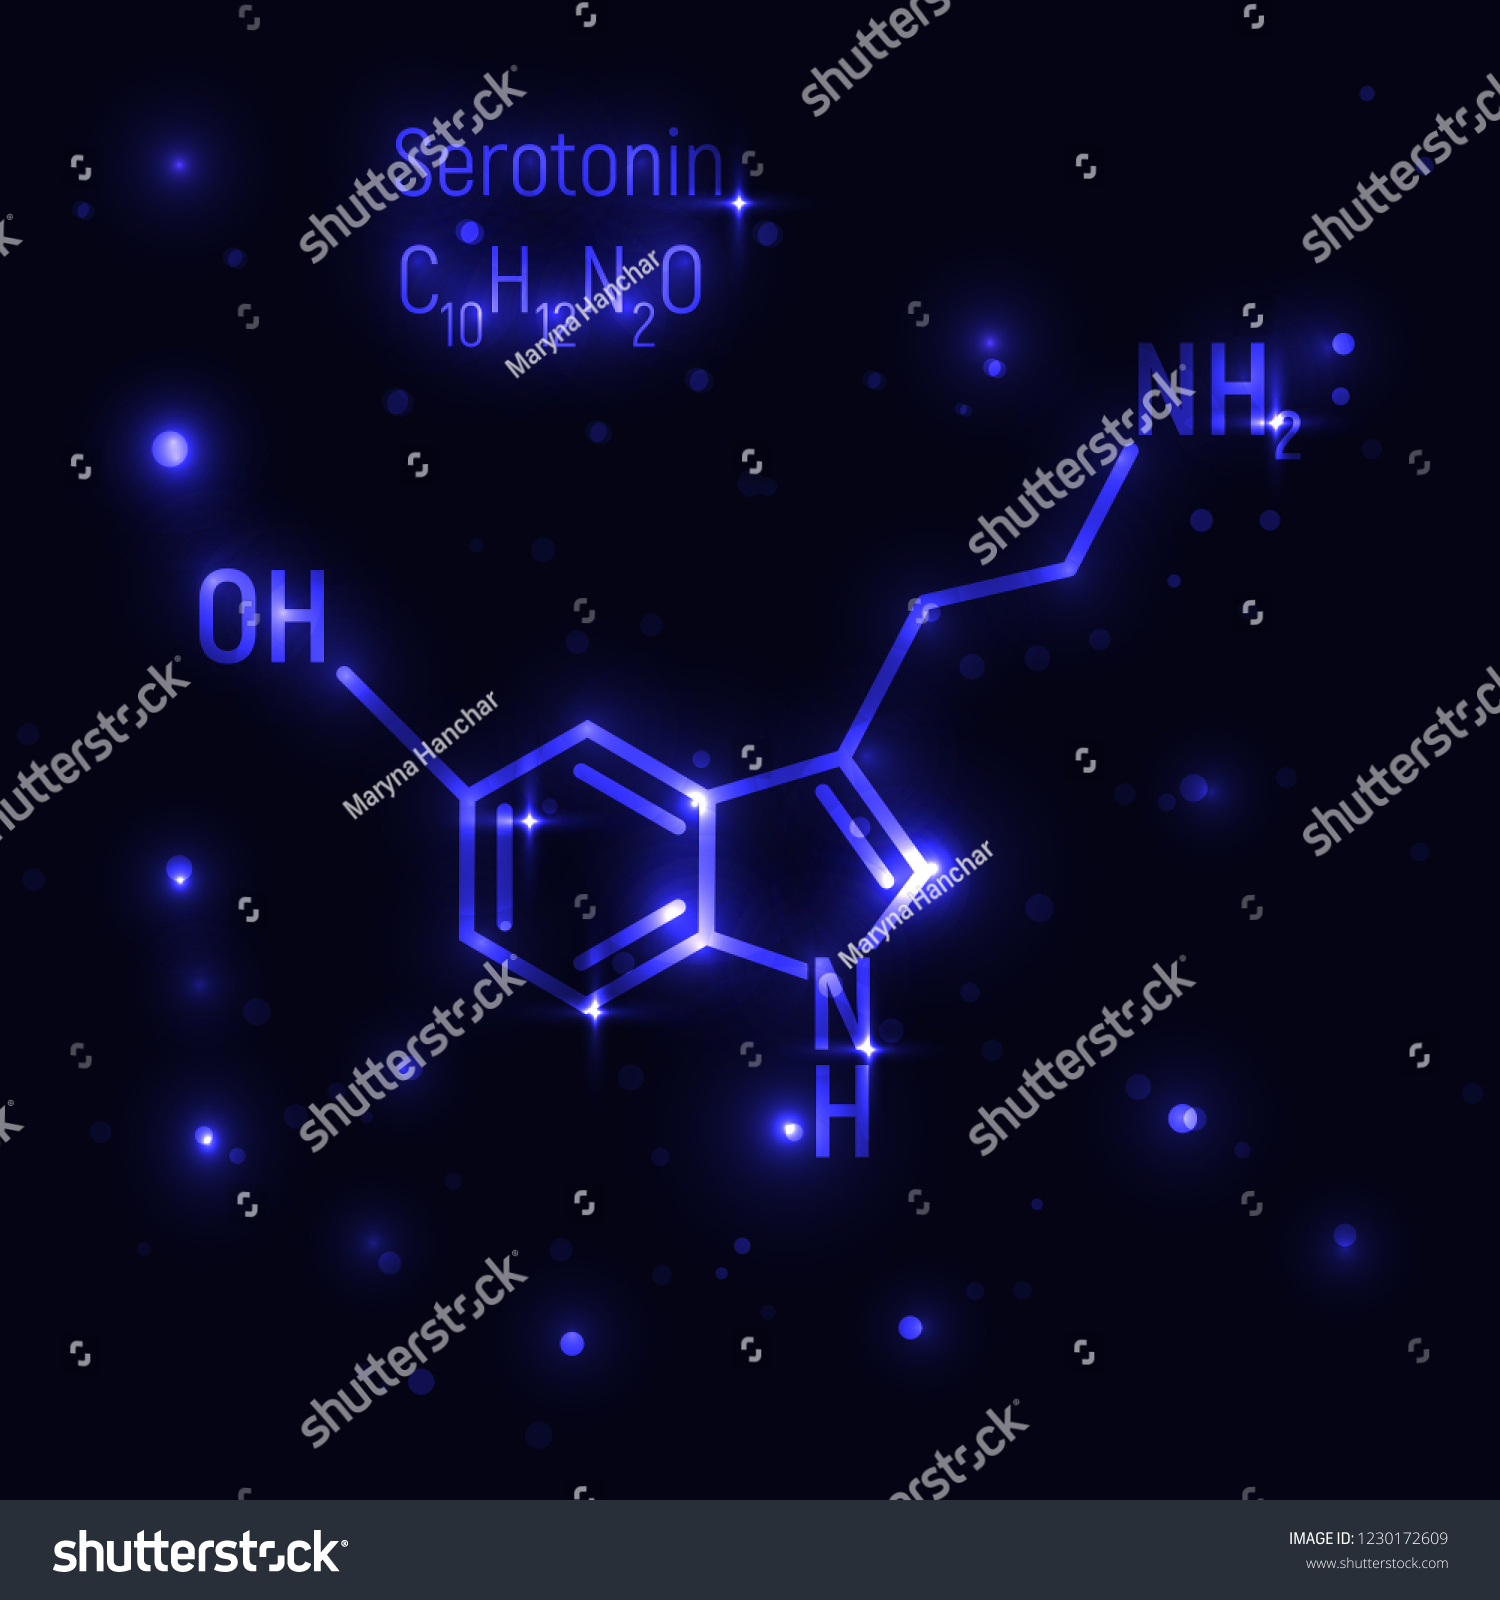 Serotonin Vector Illustration Dark Sky Blue Stock Royalty